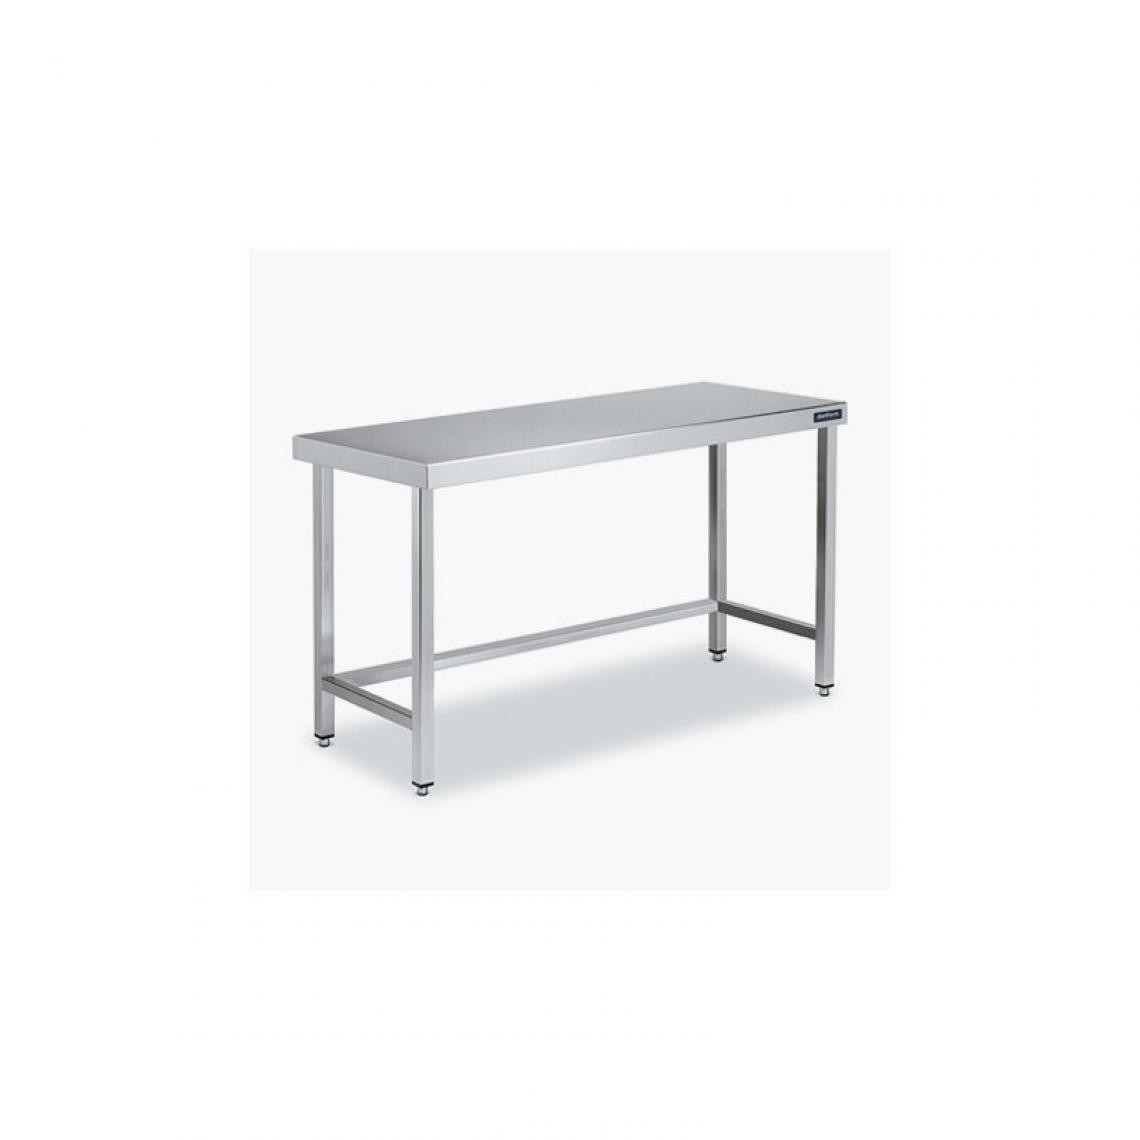 DISTFORM - Table Centrale 600x700 avec Renforts - Distform - Inox 18/101500x700x850mm - Tables à manger